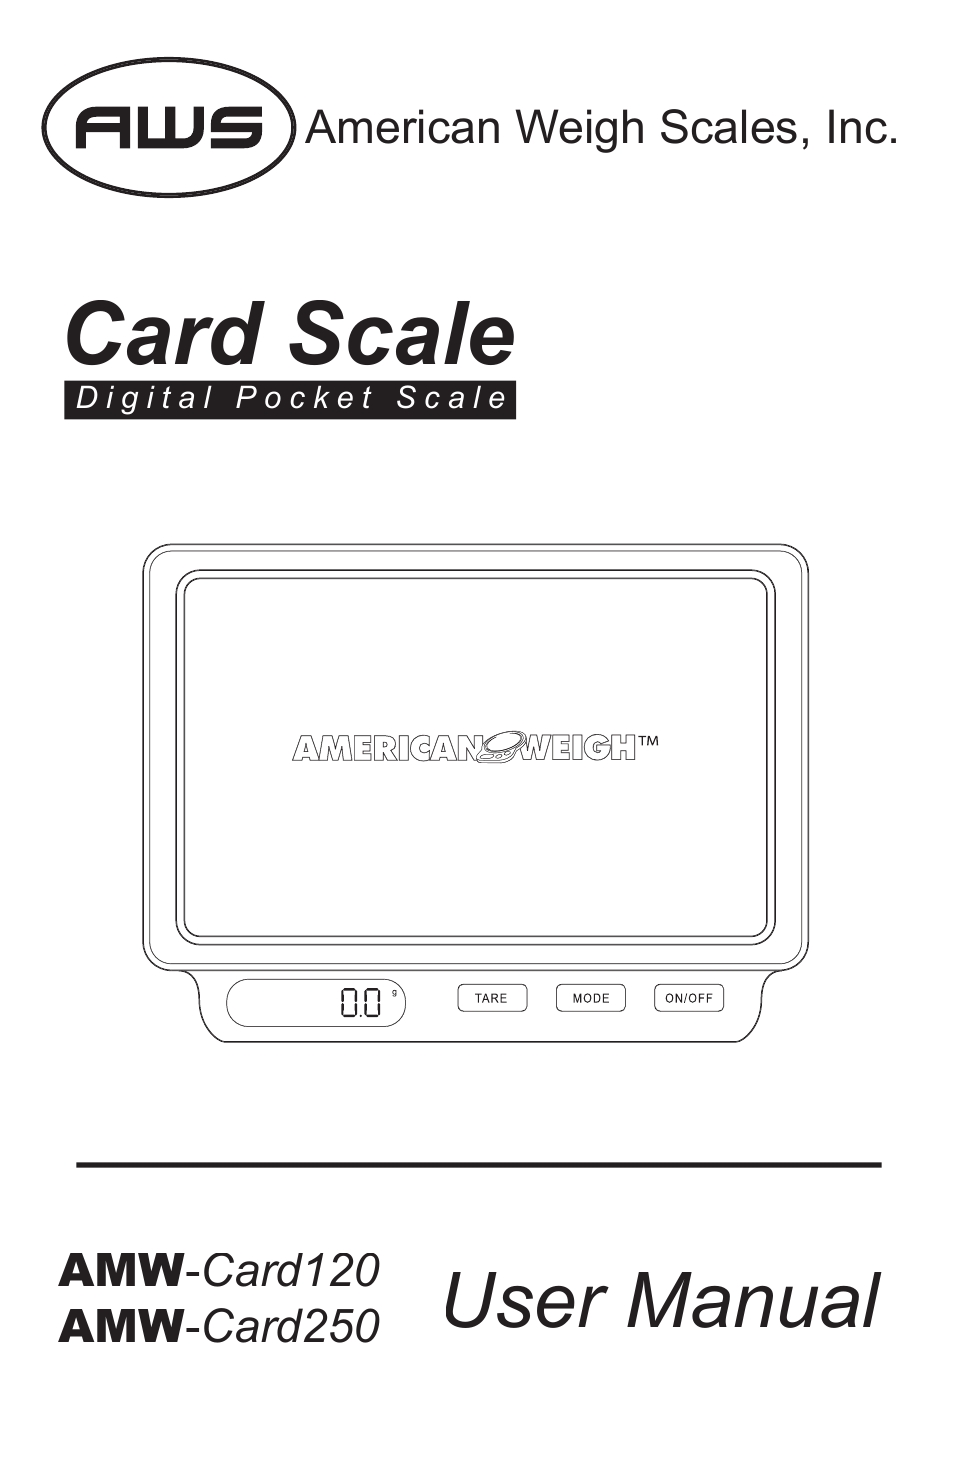 AMW-Card-250